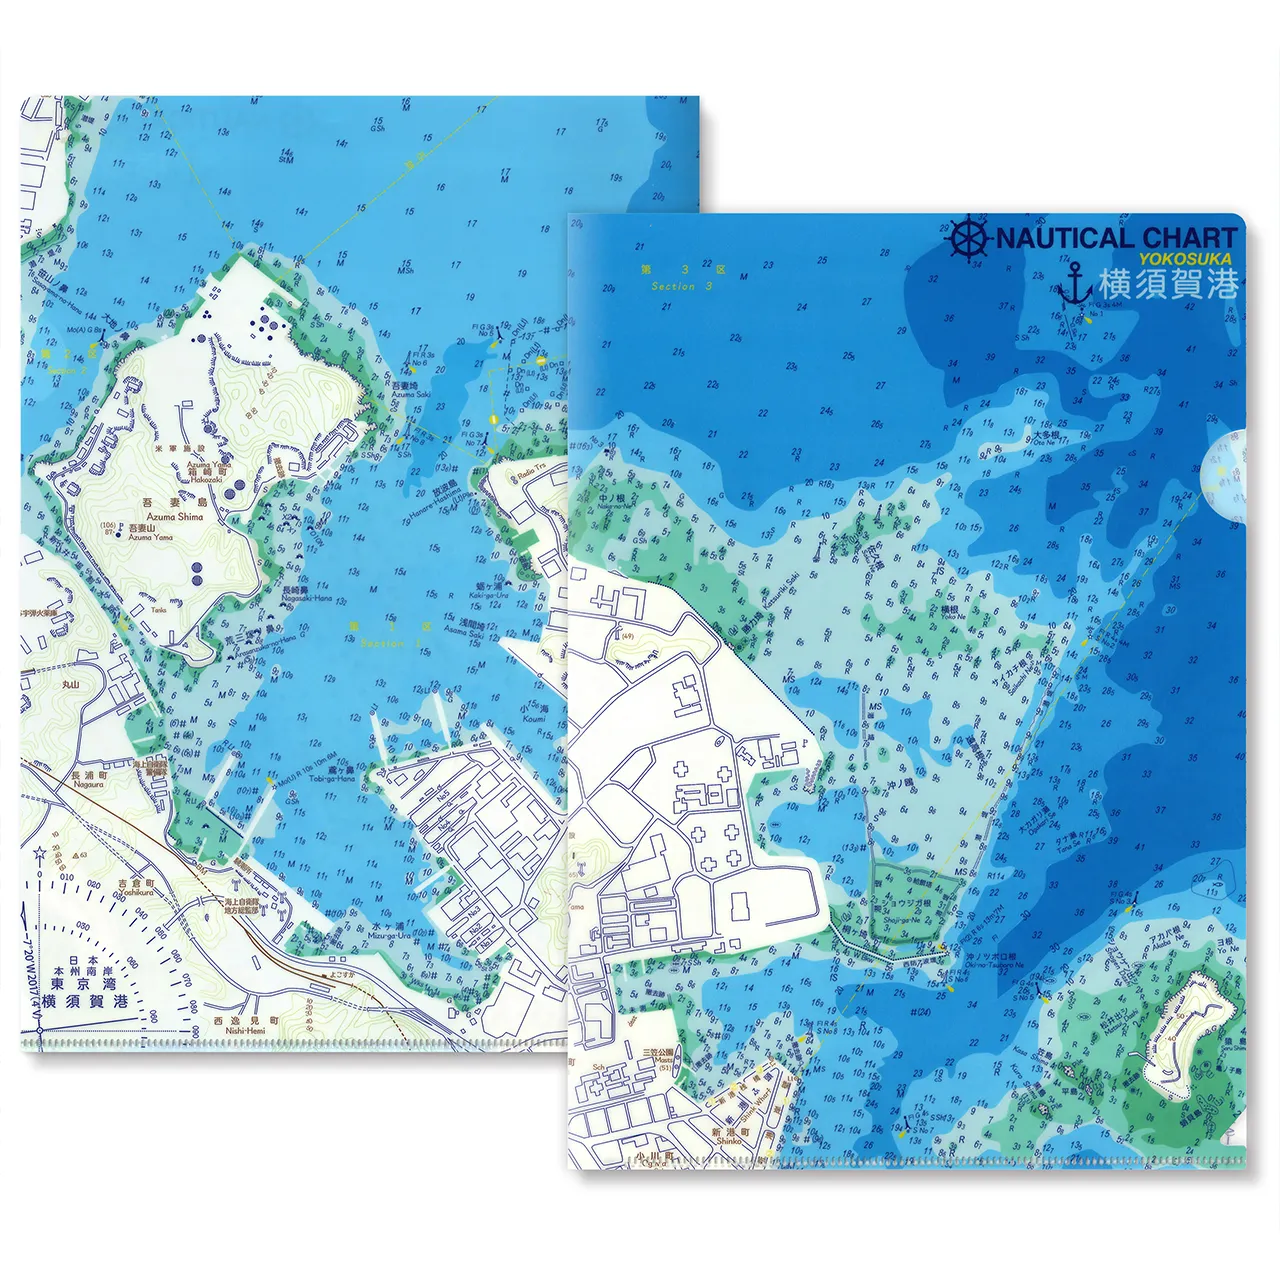 【横須賀港】海図クリアファイル